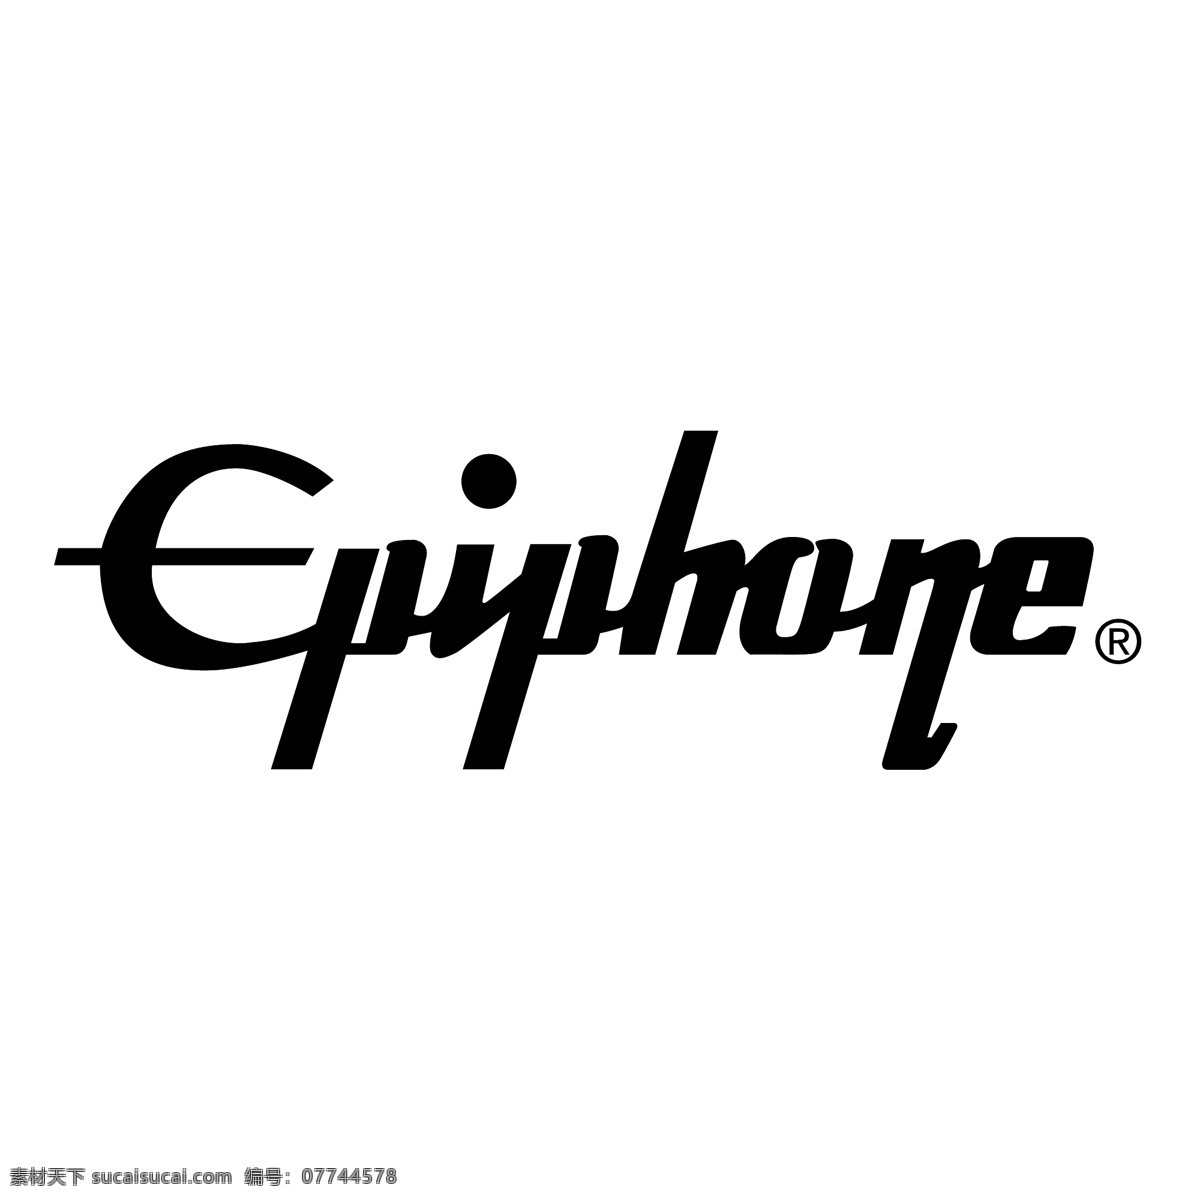 epiphone logo 矢量 logo矢量 标志 免费 eps向量 蓝色